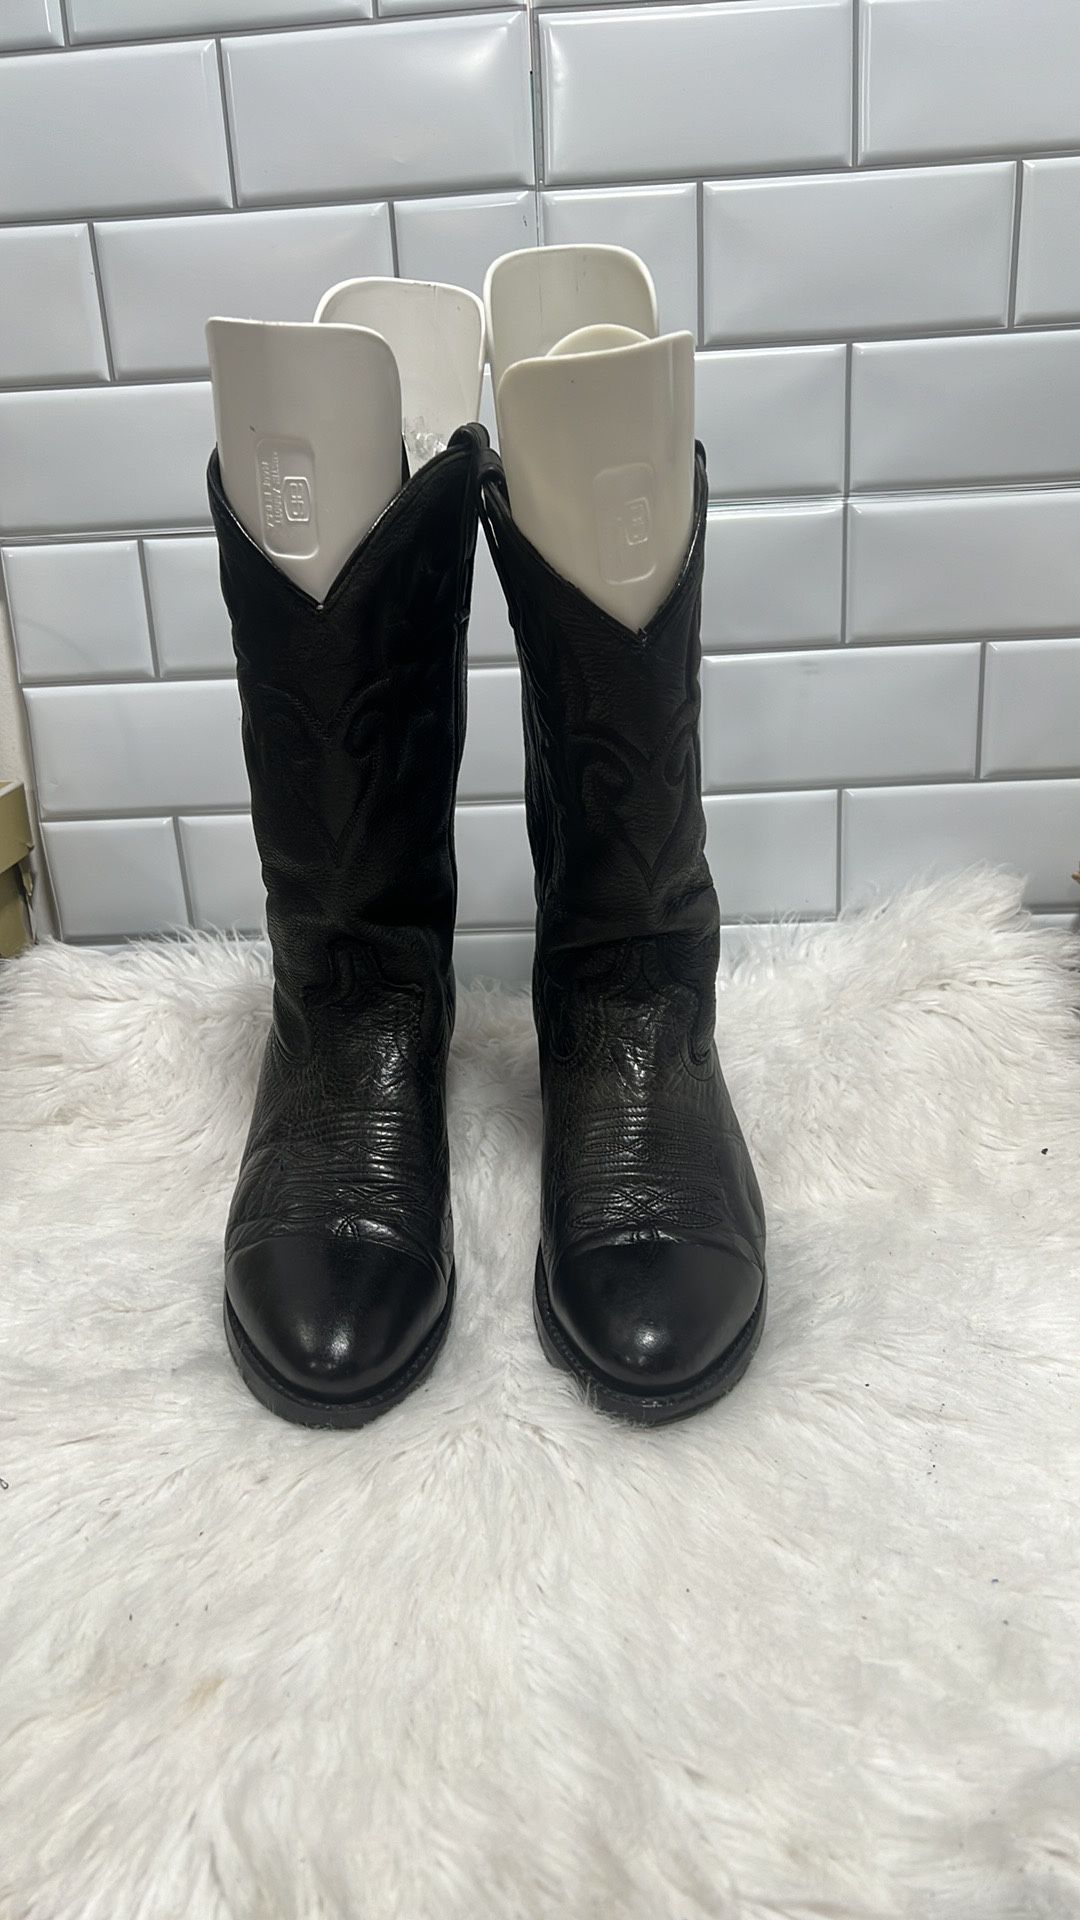 Dingo Black Leather D105980 Mid-Calf Cowboy Boots Mens Size 8.5 D